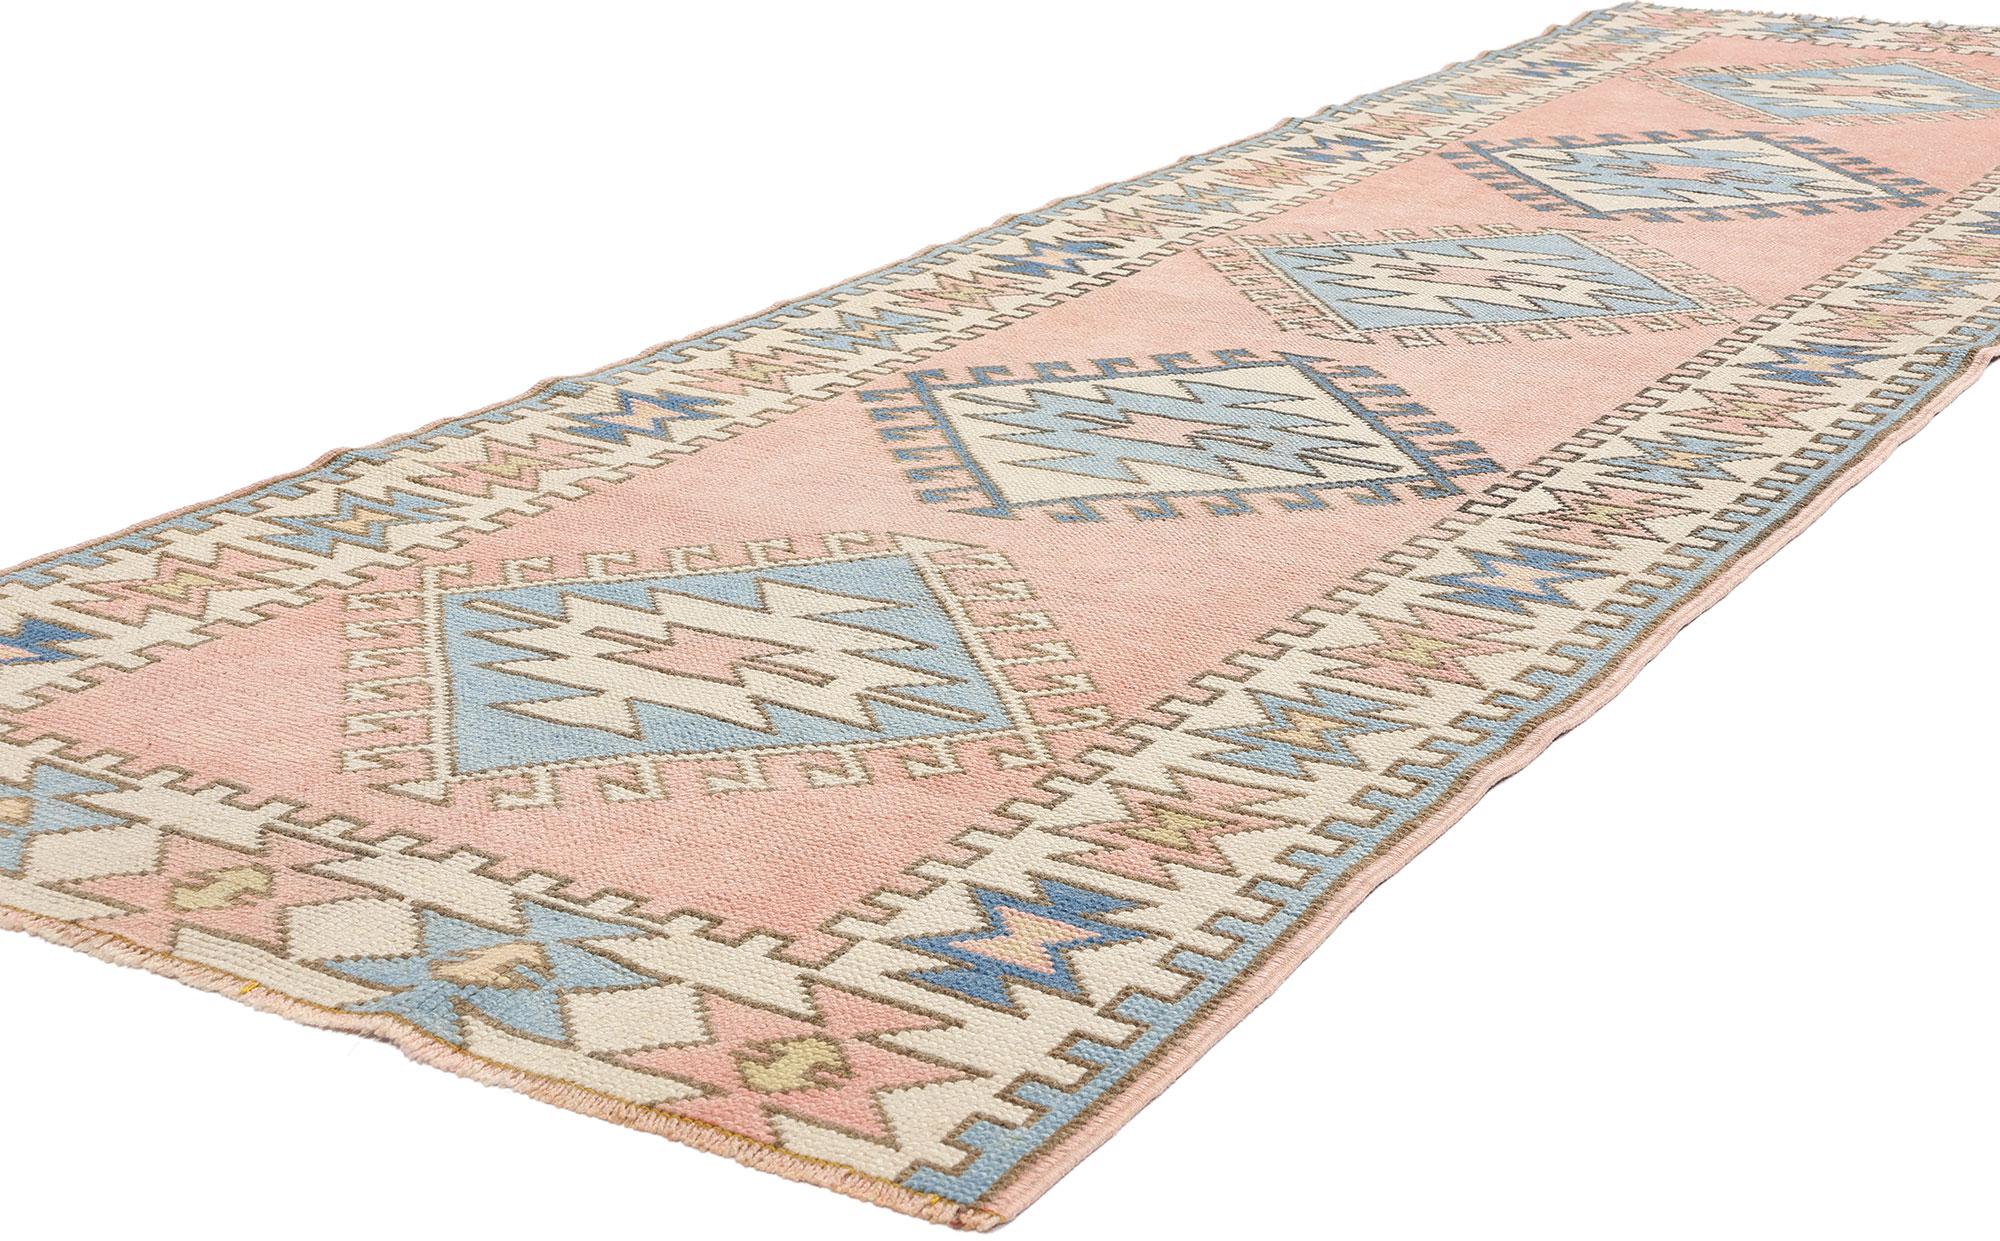 53928 Vintage Pink Türkisch Oushak Rug Runner, 02'11 x 09'09. Türkische Oushak-Teppichläufer, die aus der Oushak-Region in der Westtürkei stammen, sind berühmt für ihre kunstvollen Designs, die ausgedehnte geometrische Muster und beruhigende